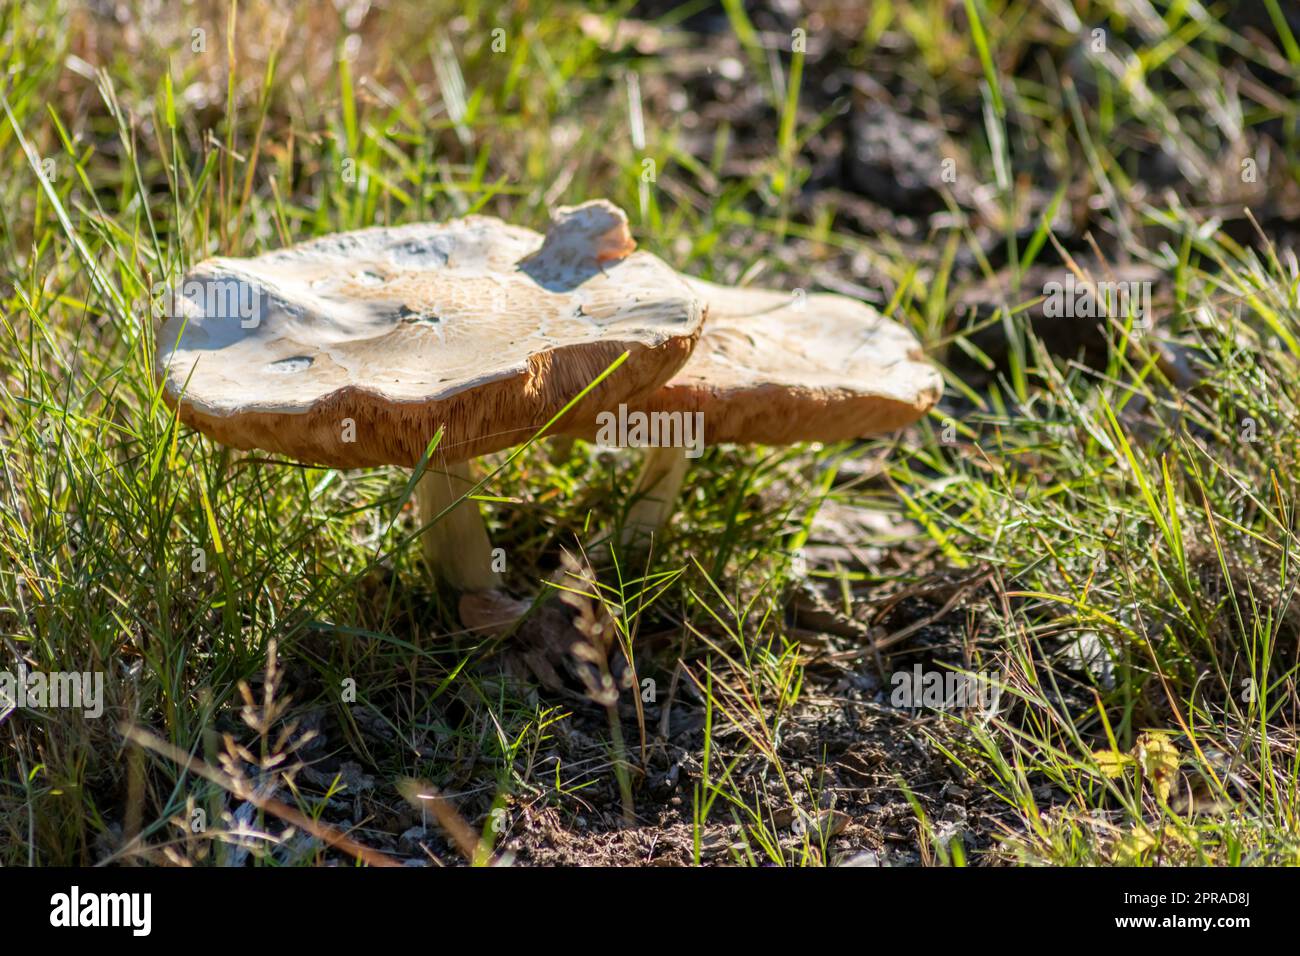 Grandi funghi in una foresta che si trova in autunno durante il tour dei funghi, con fogliame marrone retroilluminato a terra nella stagione dei funghi, come delizioso ma forse velenoso e pericoloso frutto della foresta Foto Stock